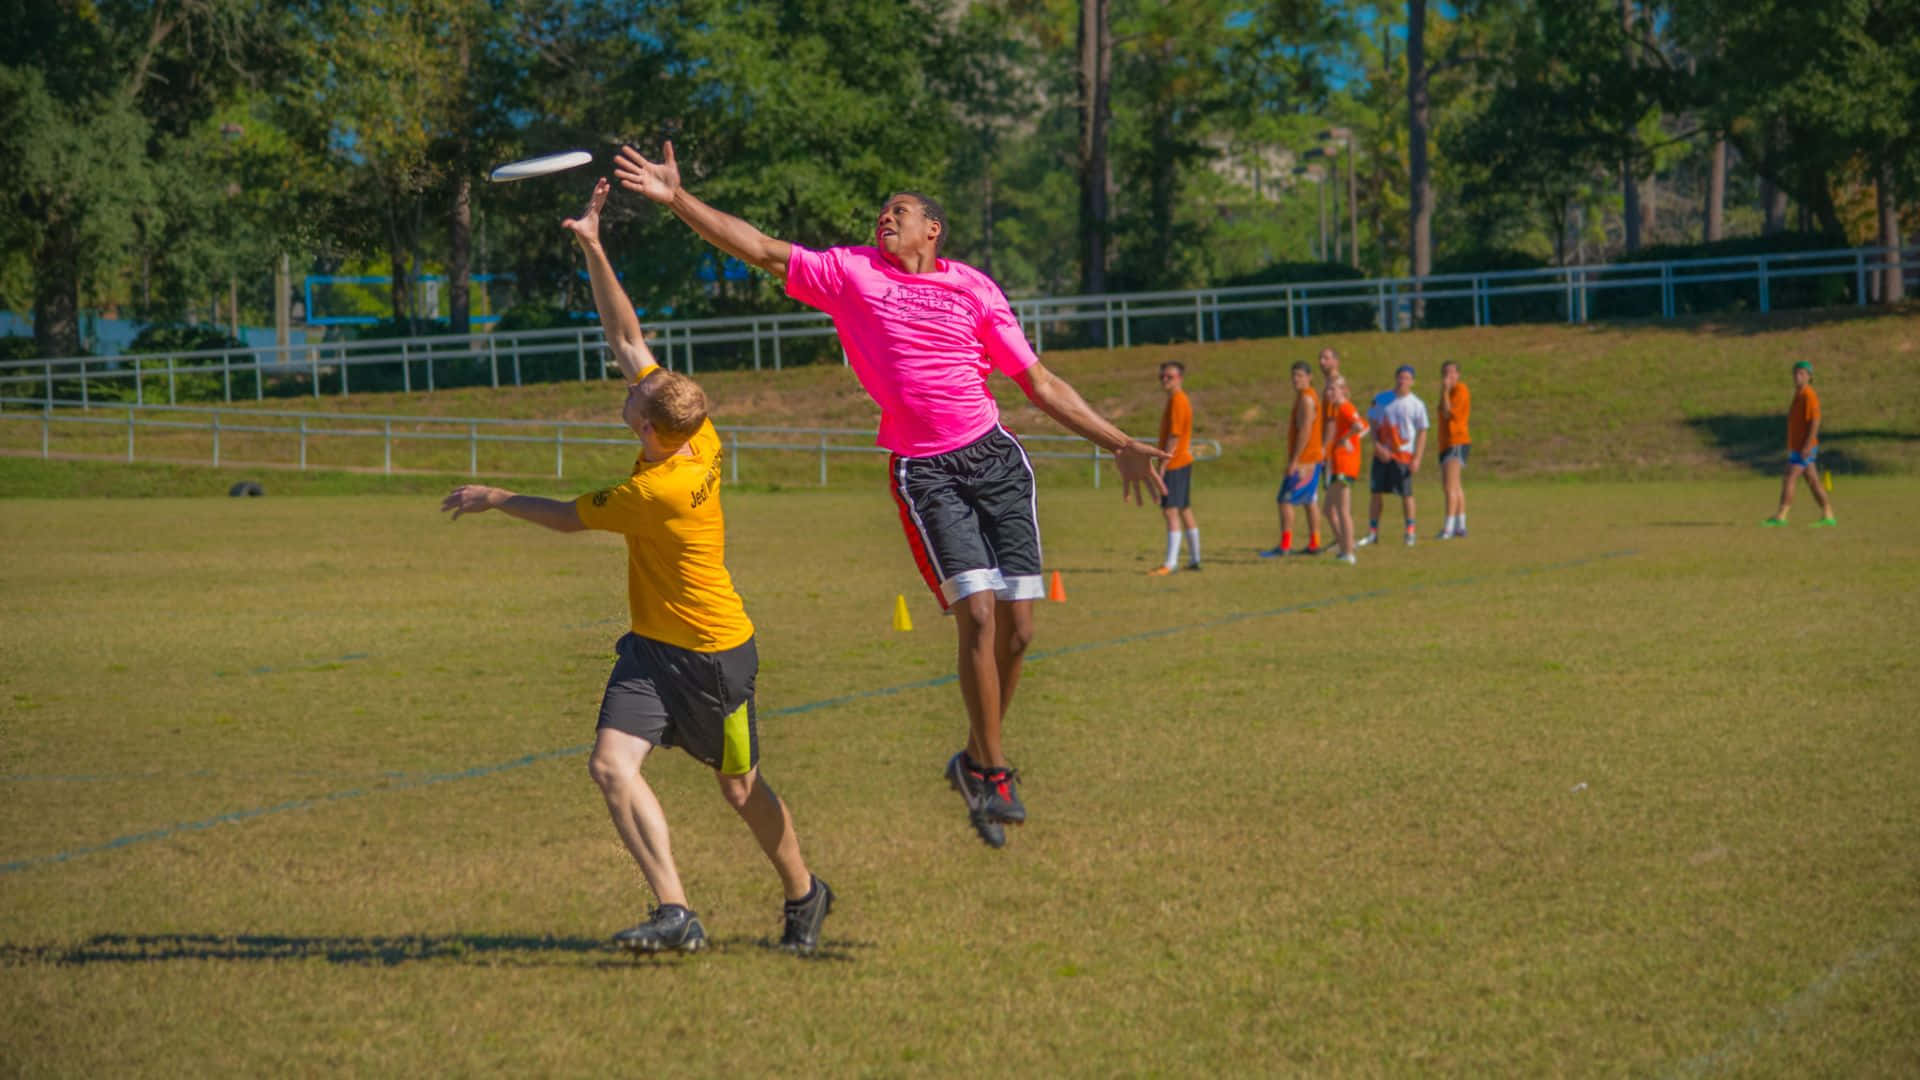 Doshombres Jugando Al Frisbee En Un Campo